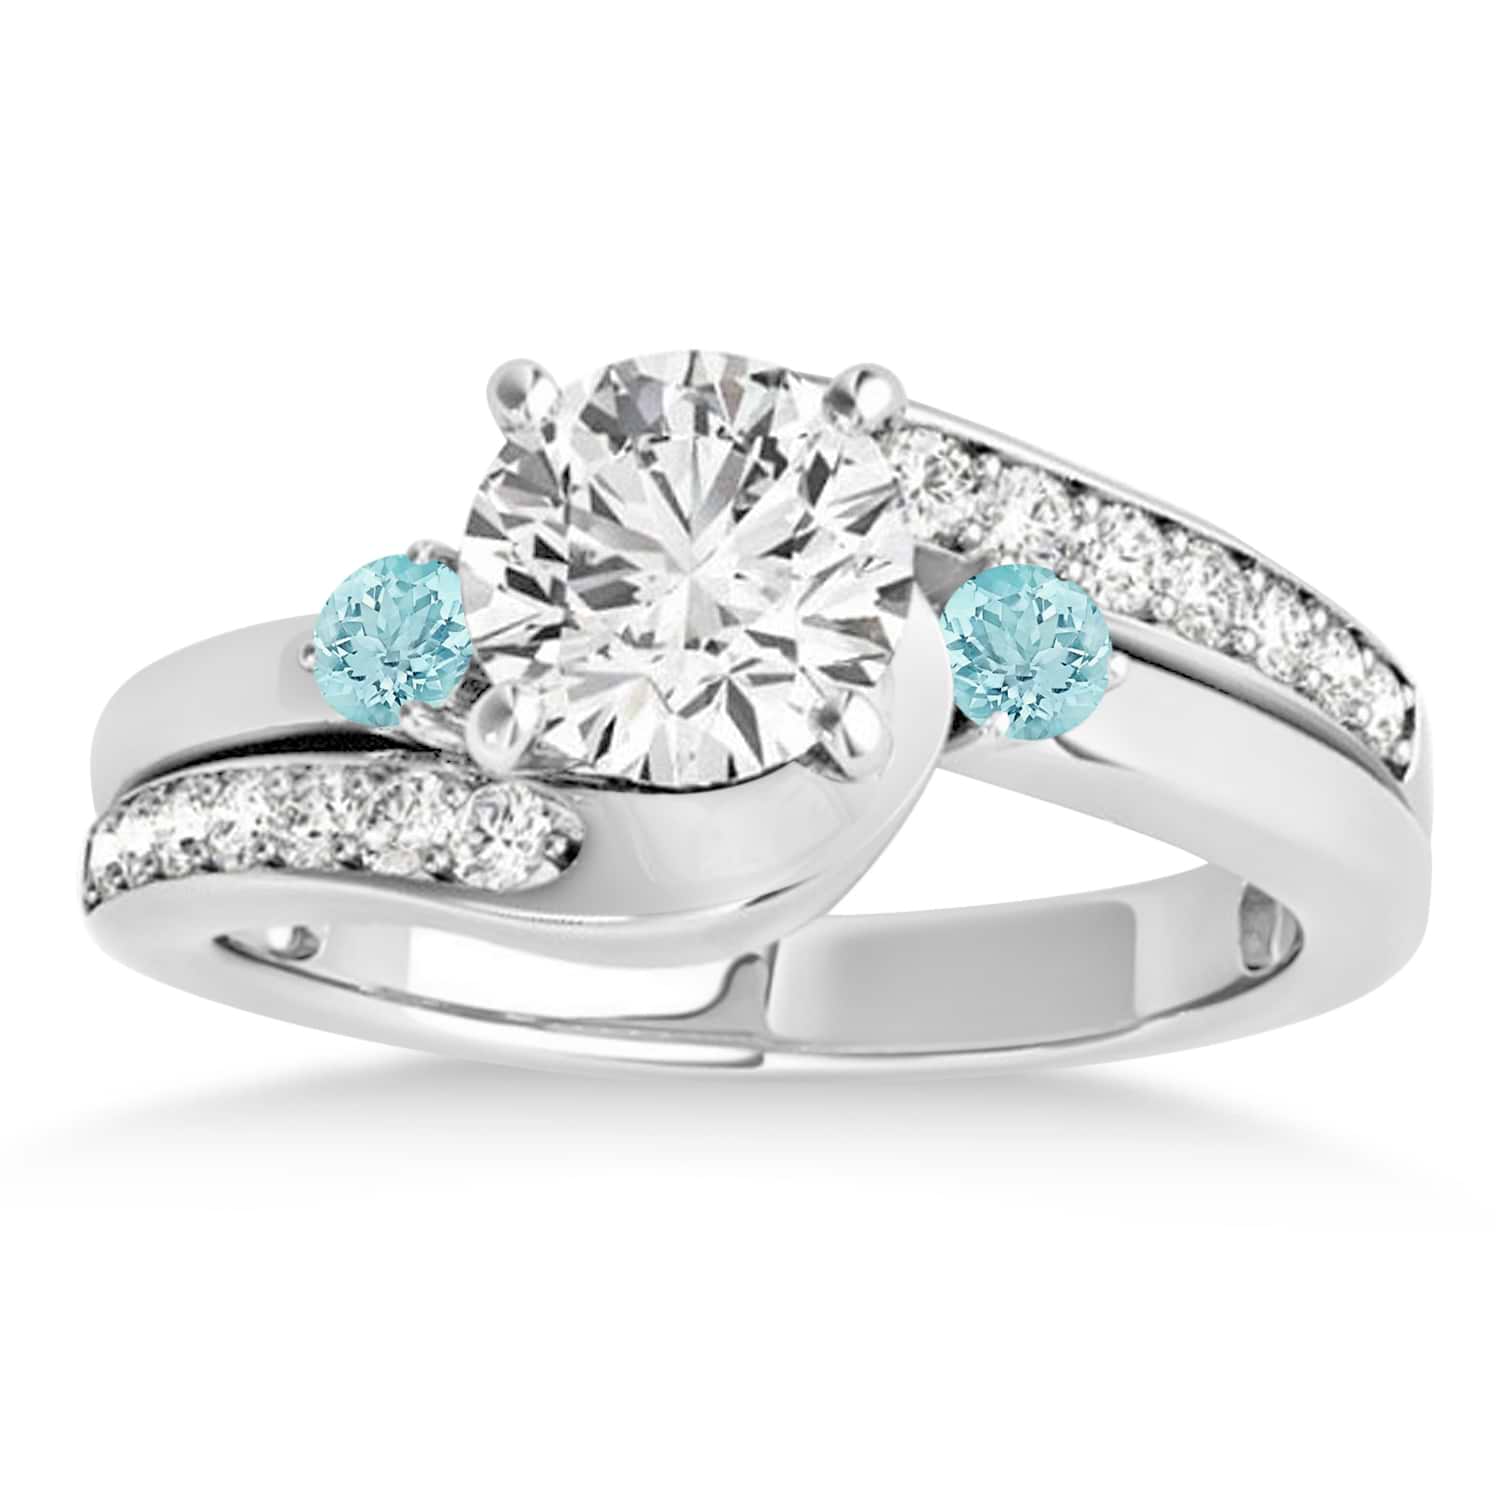 Swirl Design Aquamarine & Diamond Engagement Ring Setting 18k White Gold 0.38ct